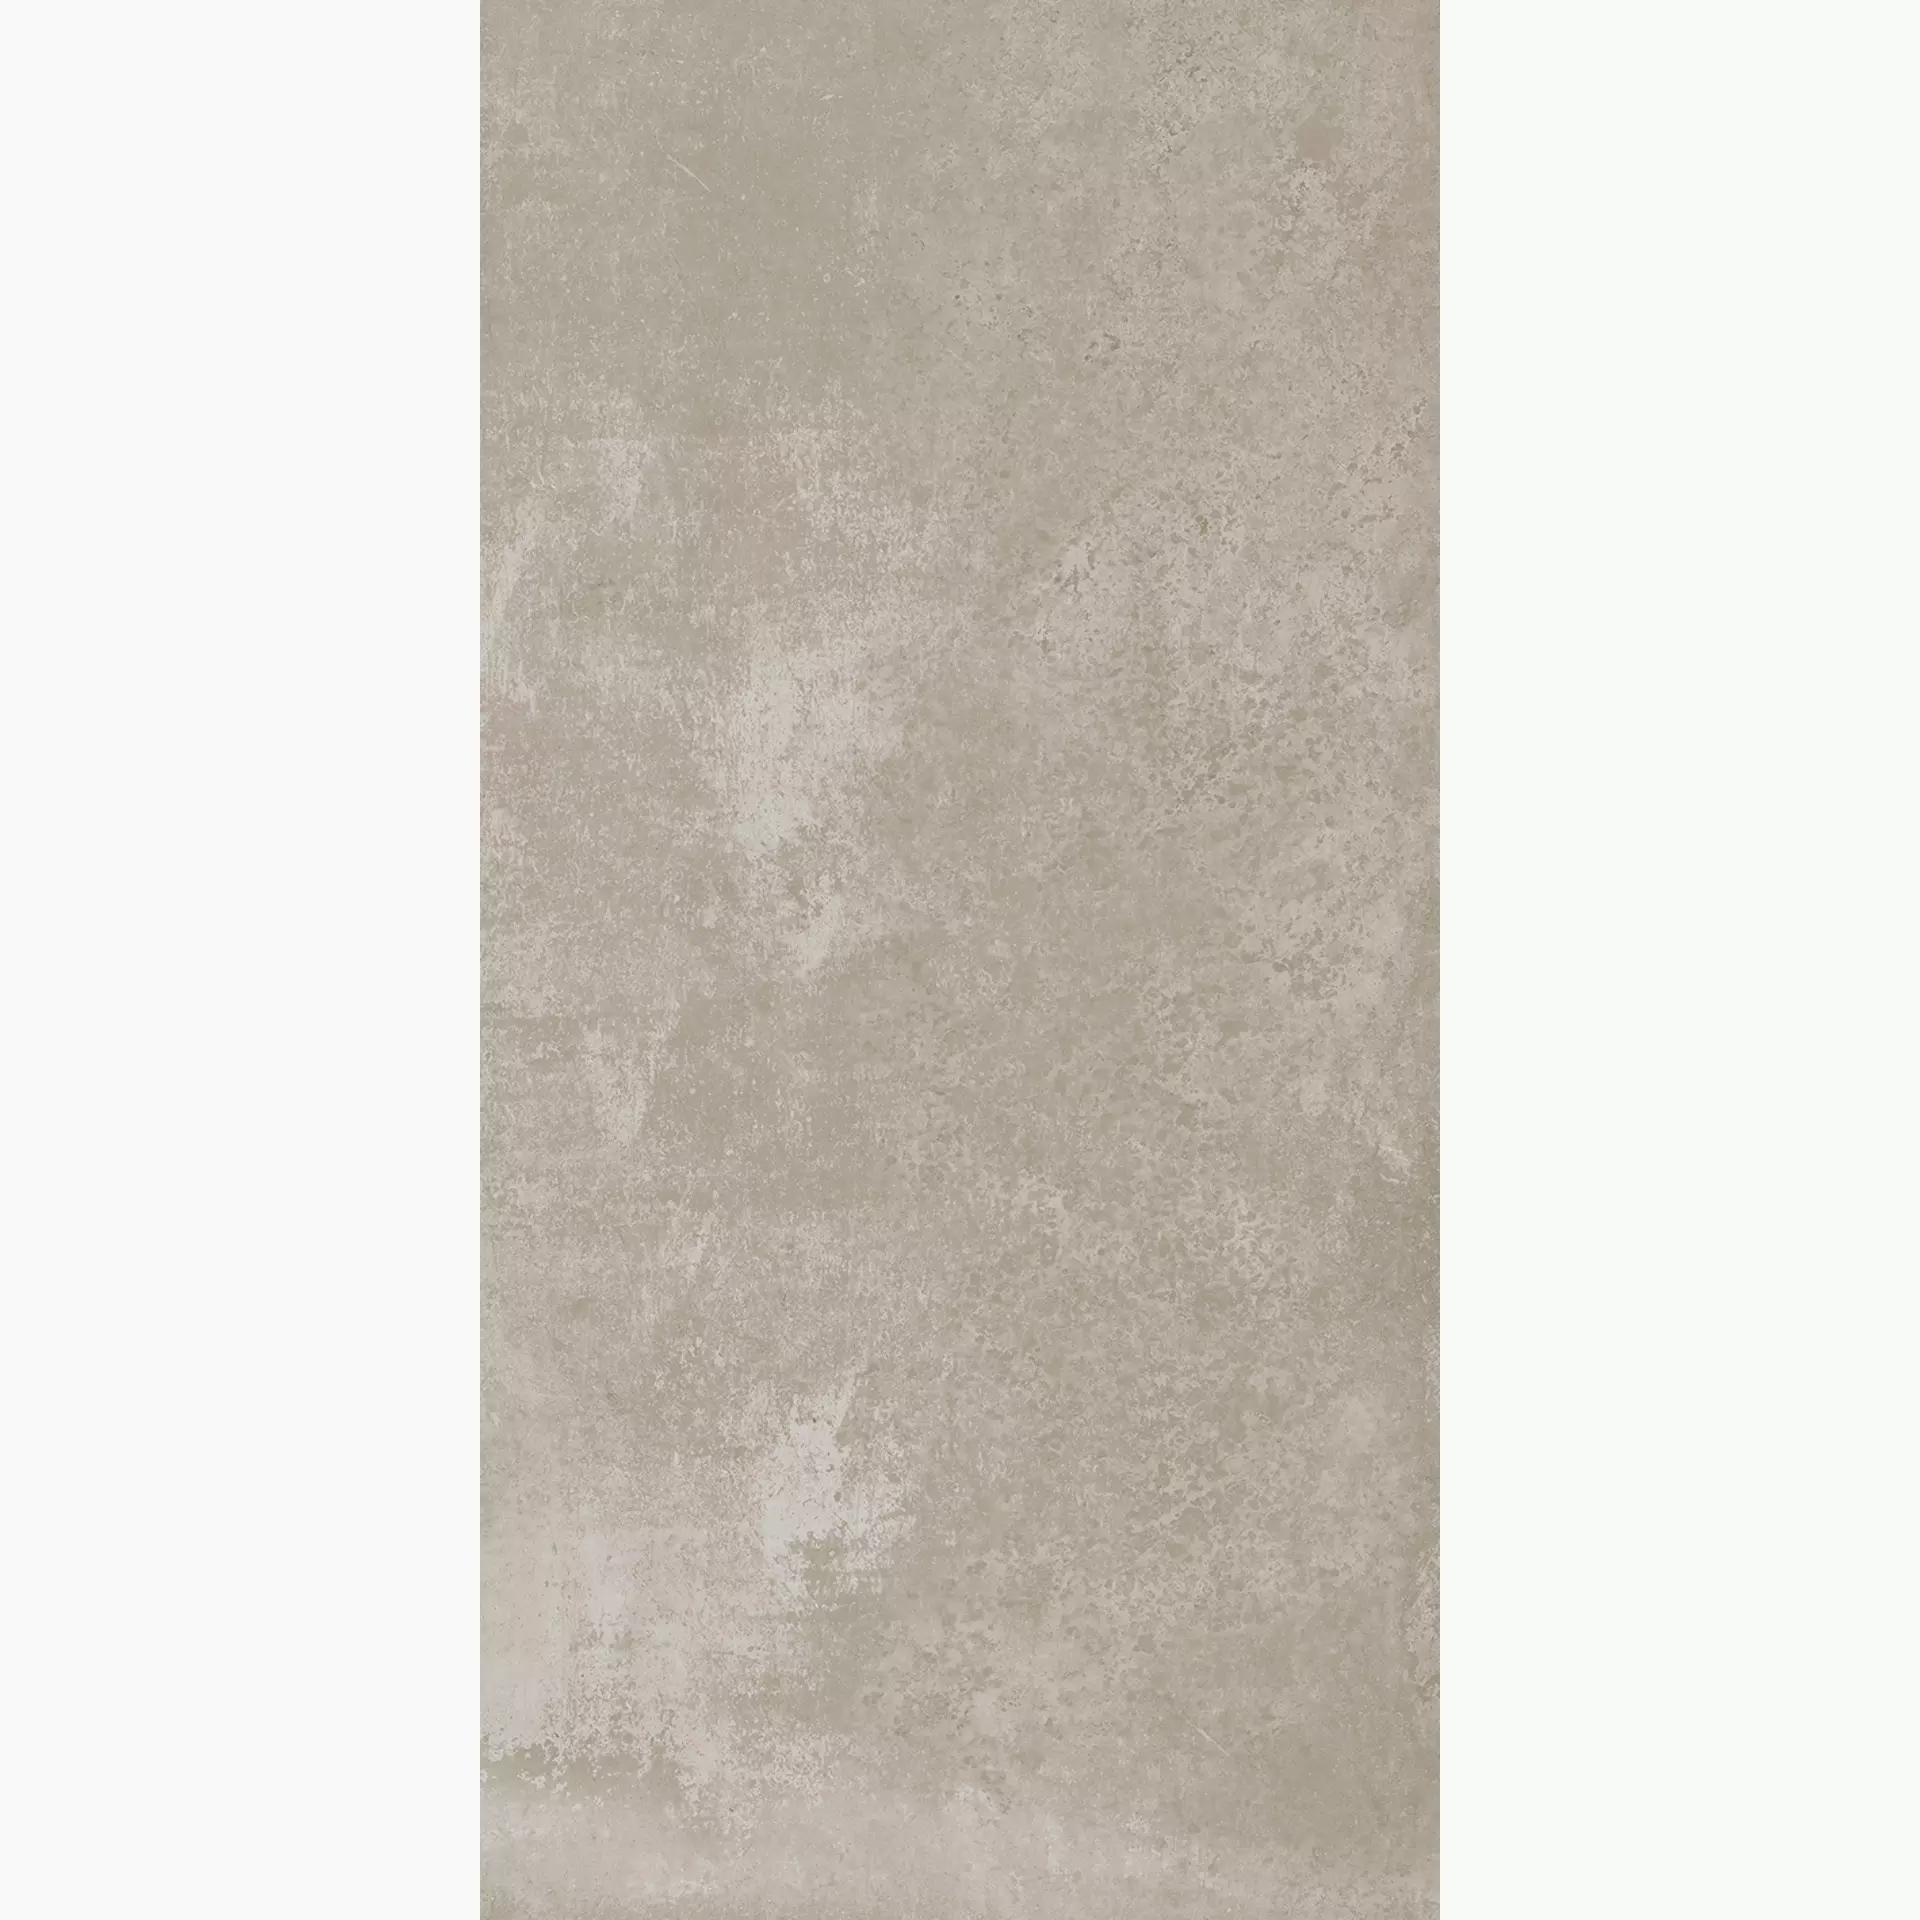 Wandfliese,Bodenfliese Villeroy & Boch Atlanta Sand Grey Matt Sand Grey 2730-AL70 matt 60x120cm rektifiziert 10mm